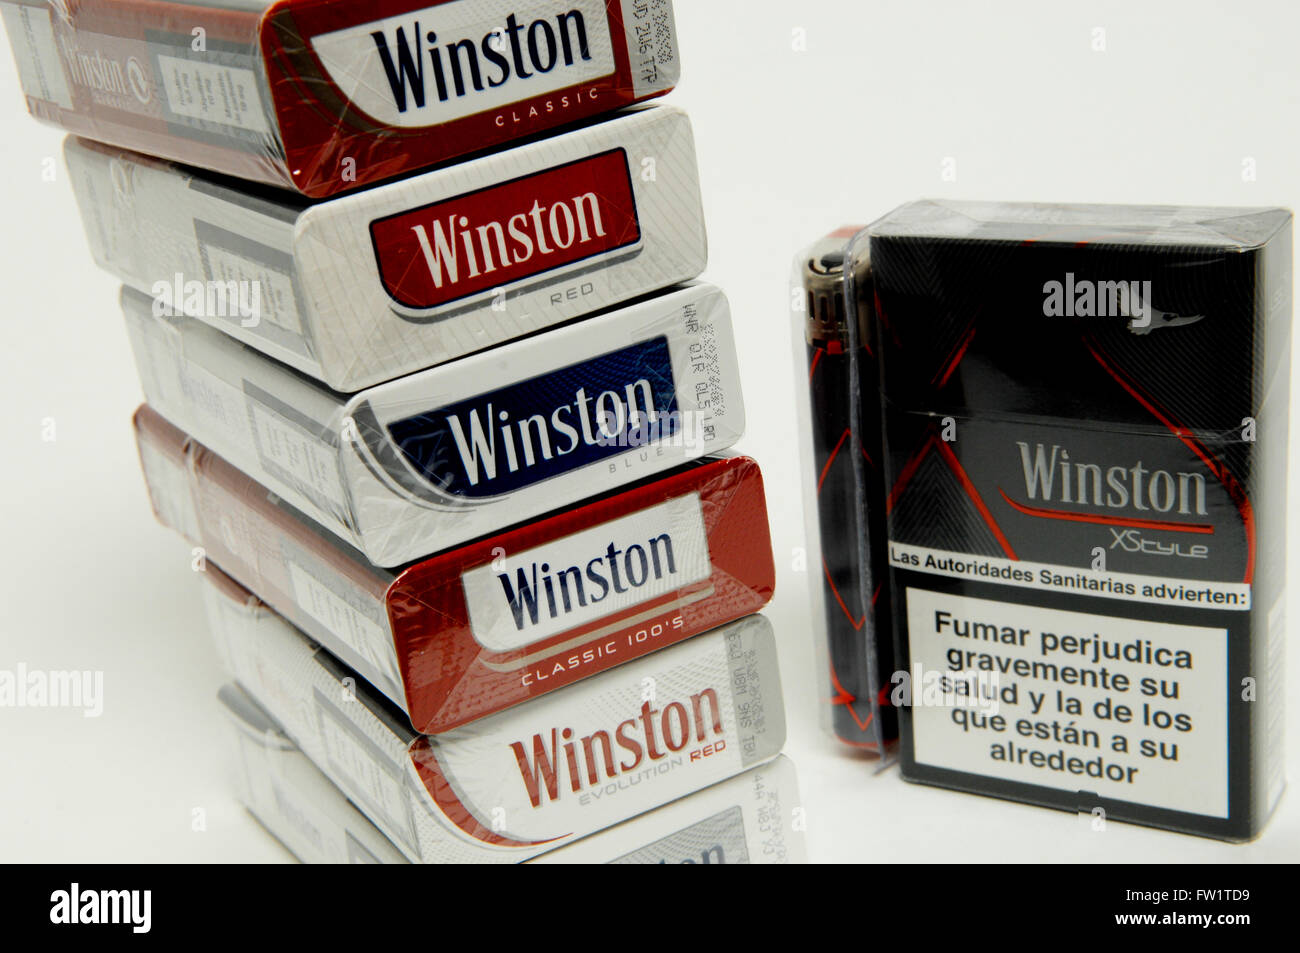 Winston cigarette